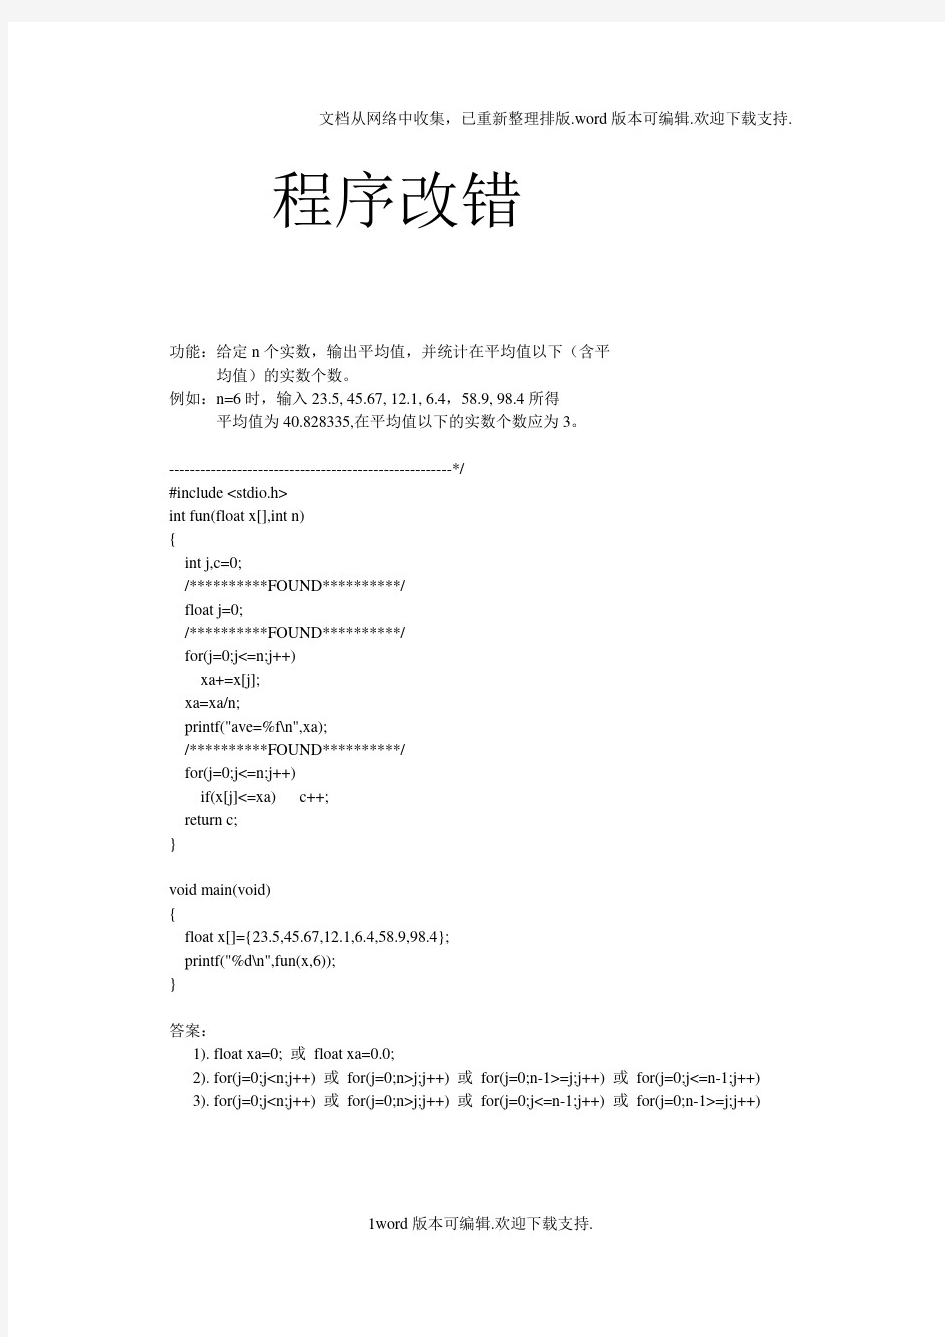 黑龙江大学C语言程序设计试题库程序改错